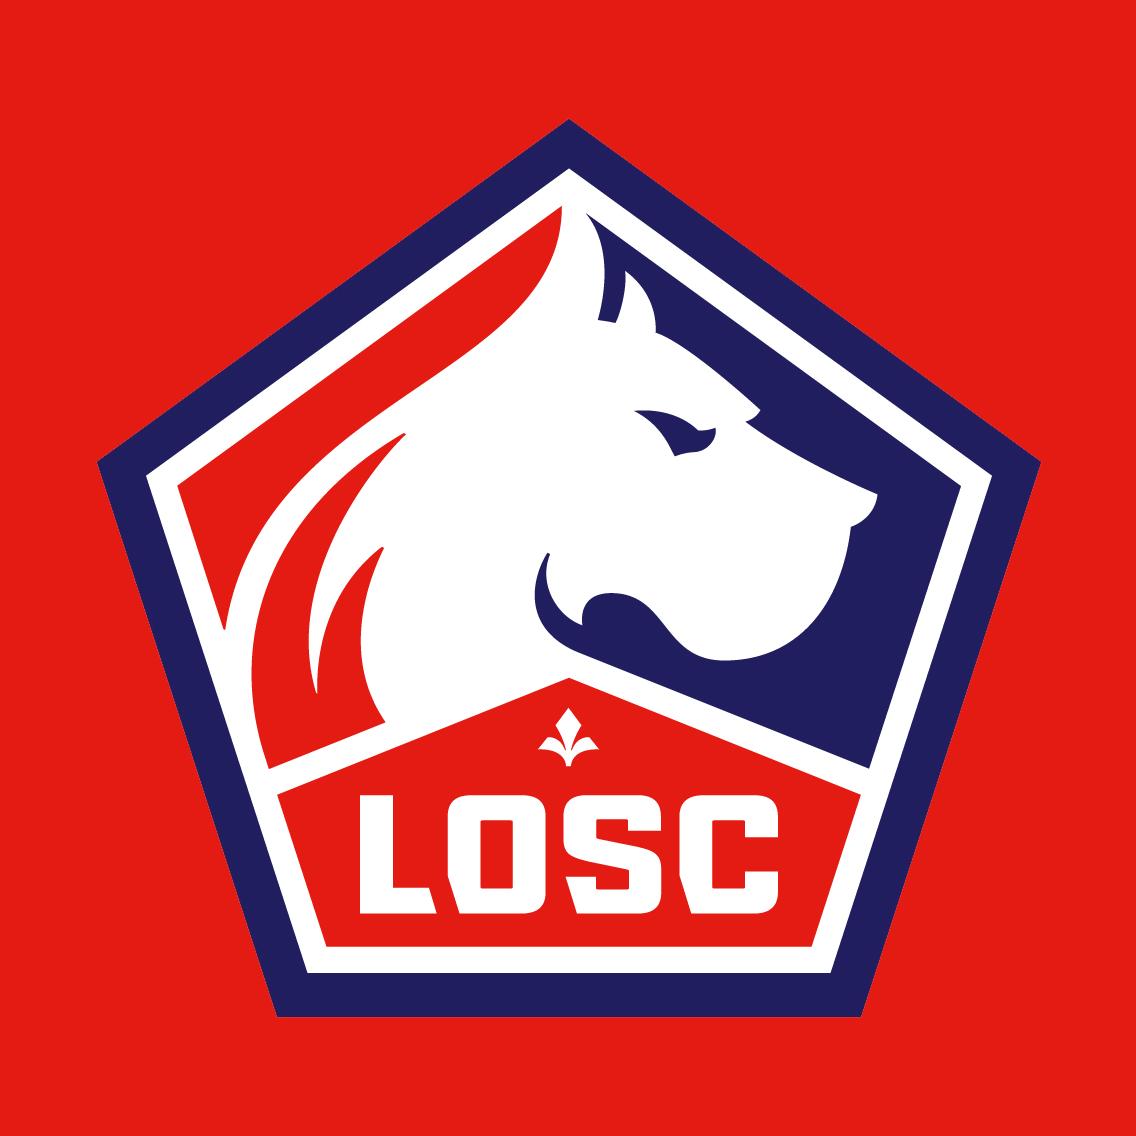 new-lille-osc-logo-2.jpg